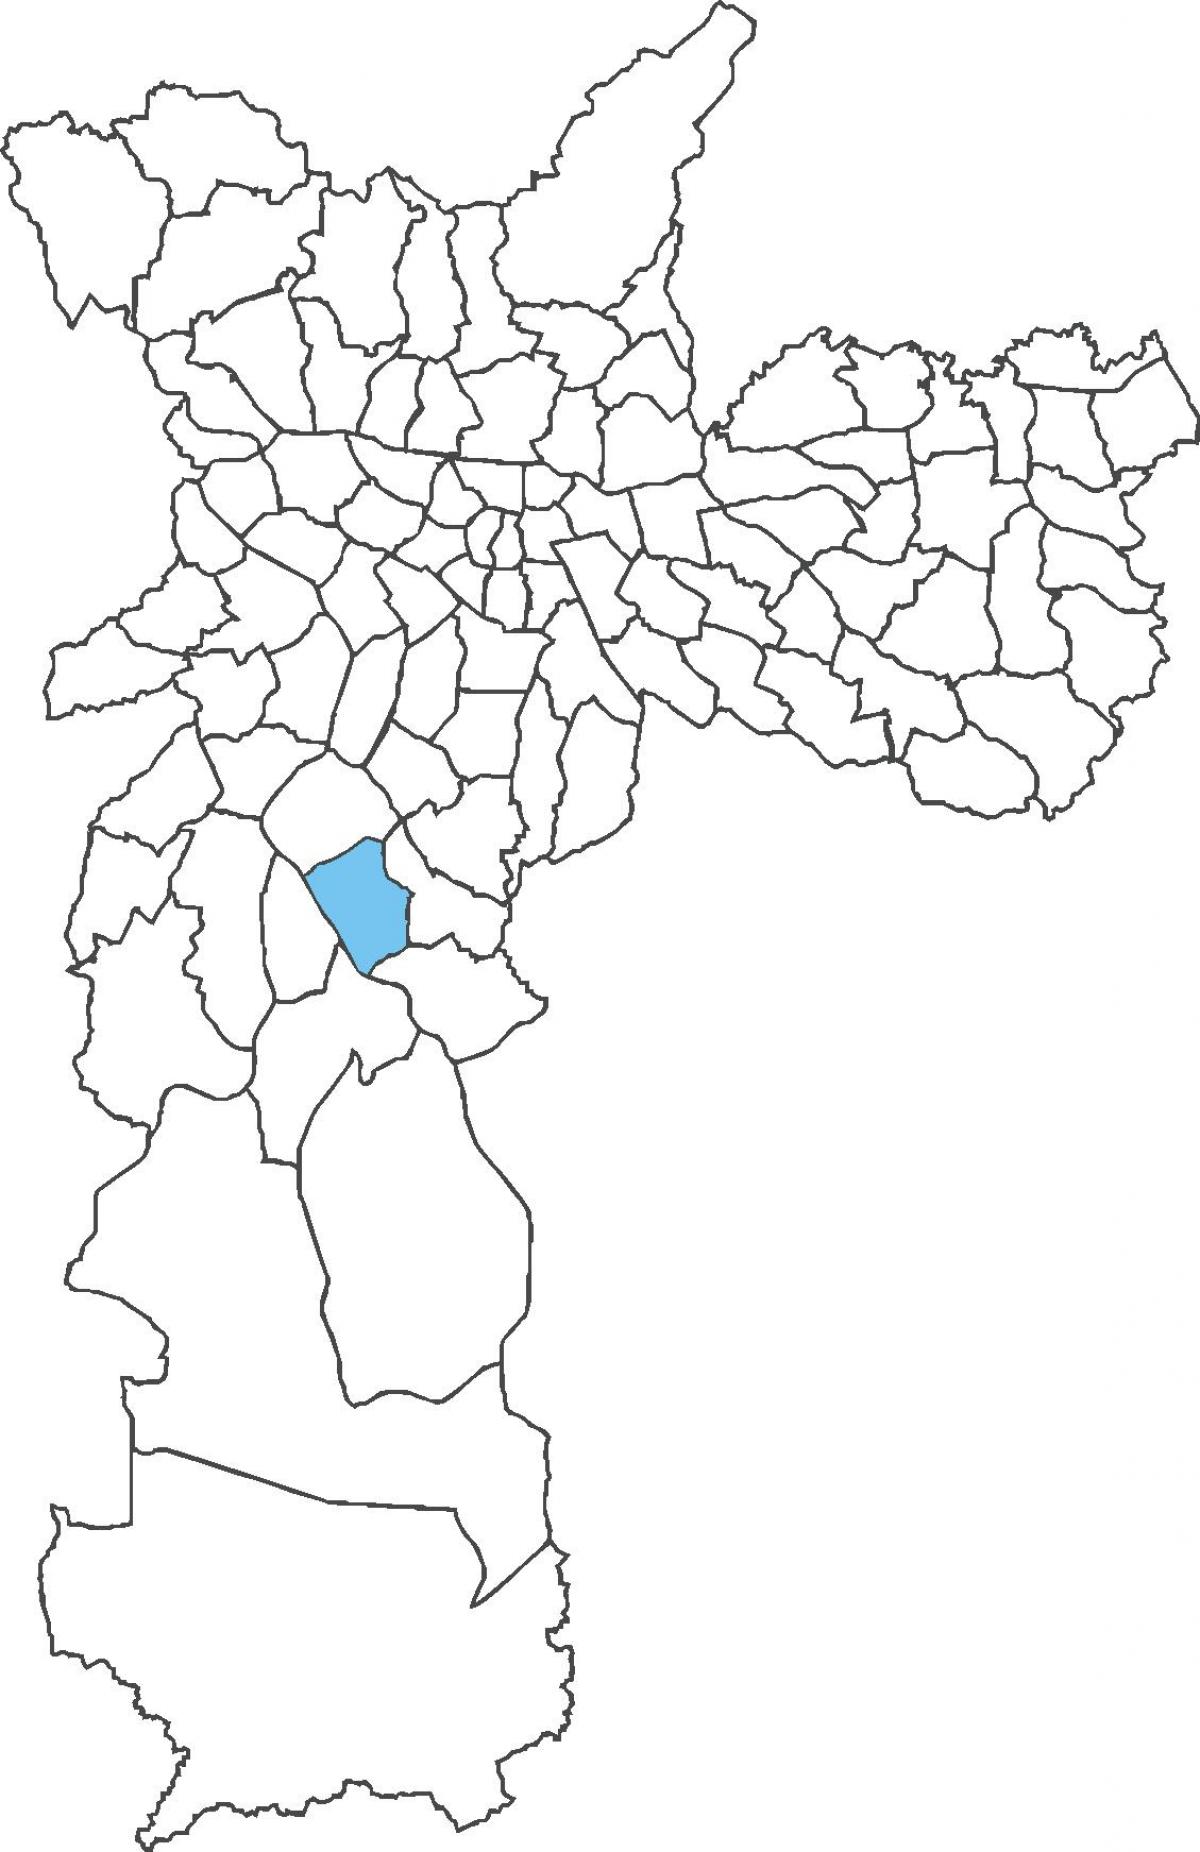 خريطة منطقة كامبو غراندي